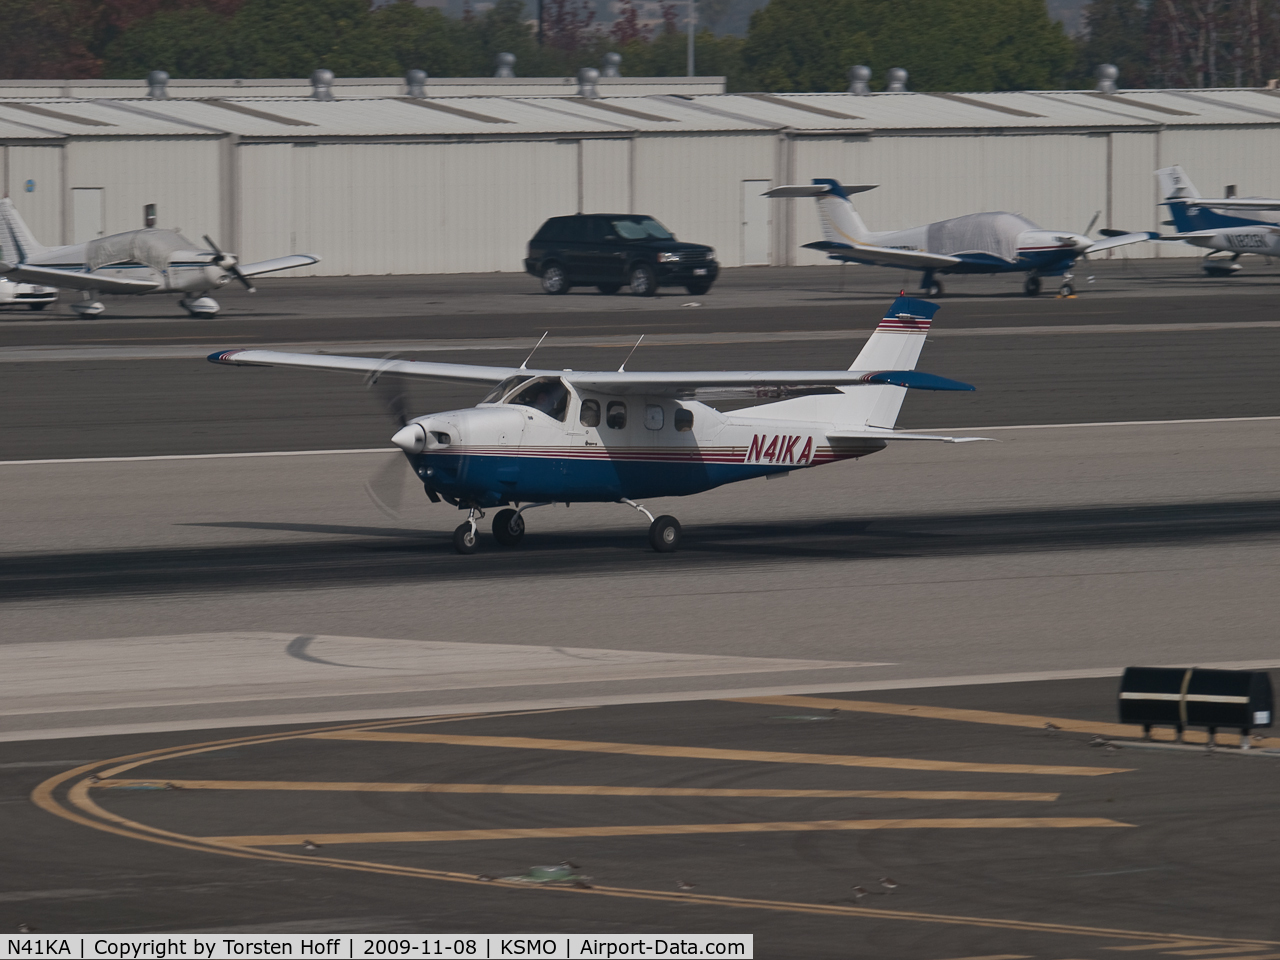 N41KA, 1978 Cessna P210N Pressurised Centurion C/N P21000045, N41KA departing from RWY 21